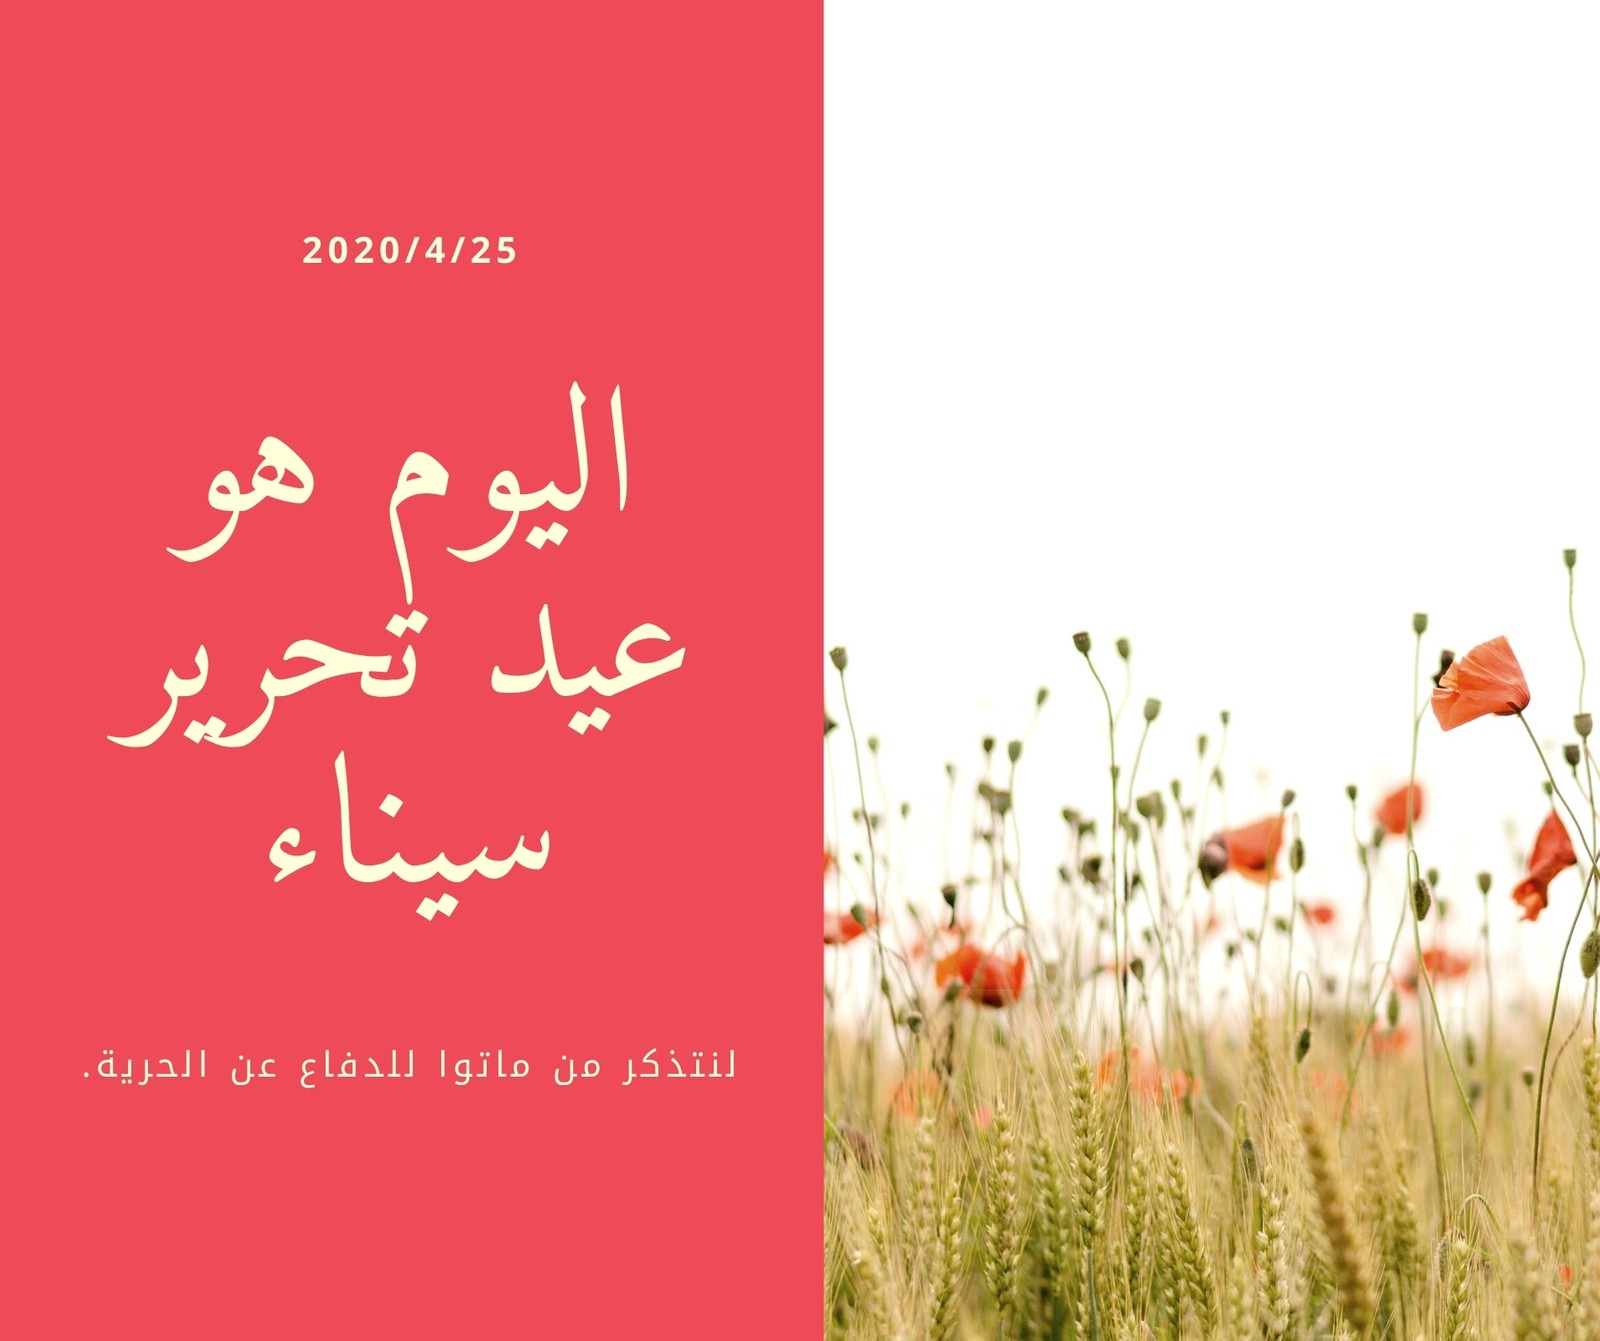 منشور فيسبوك أصفر وأحمر خشخاش أمنيات عيد تحرير سيناء